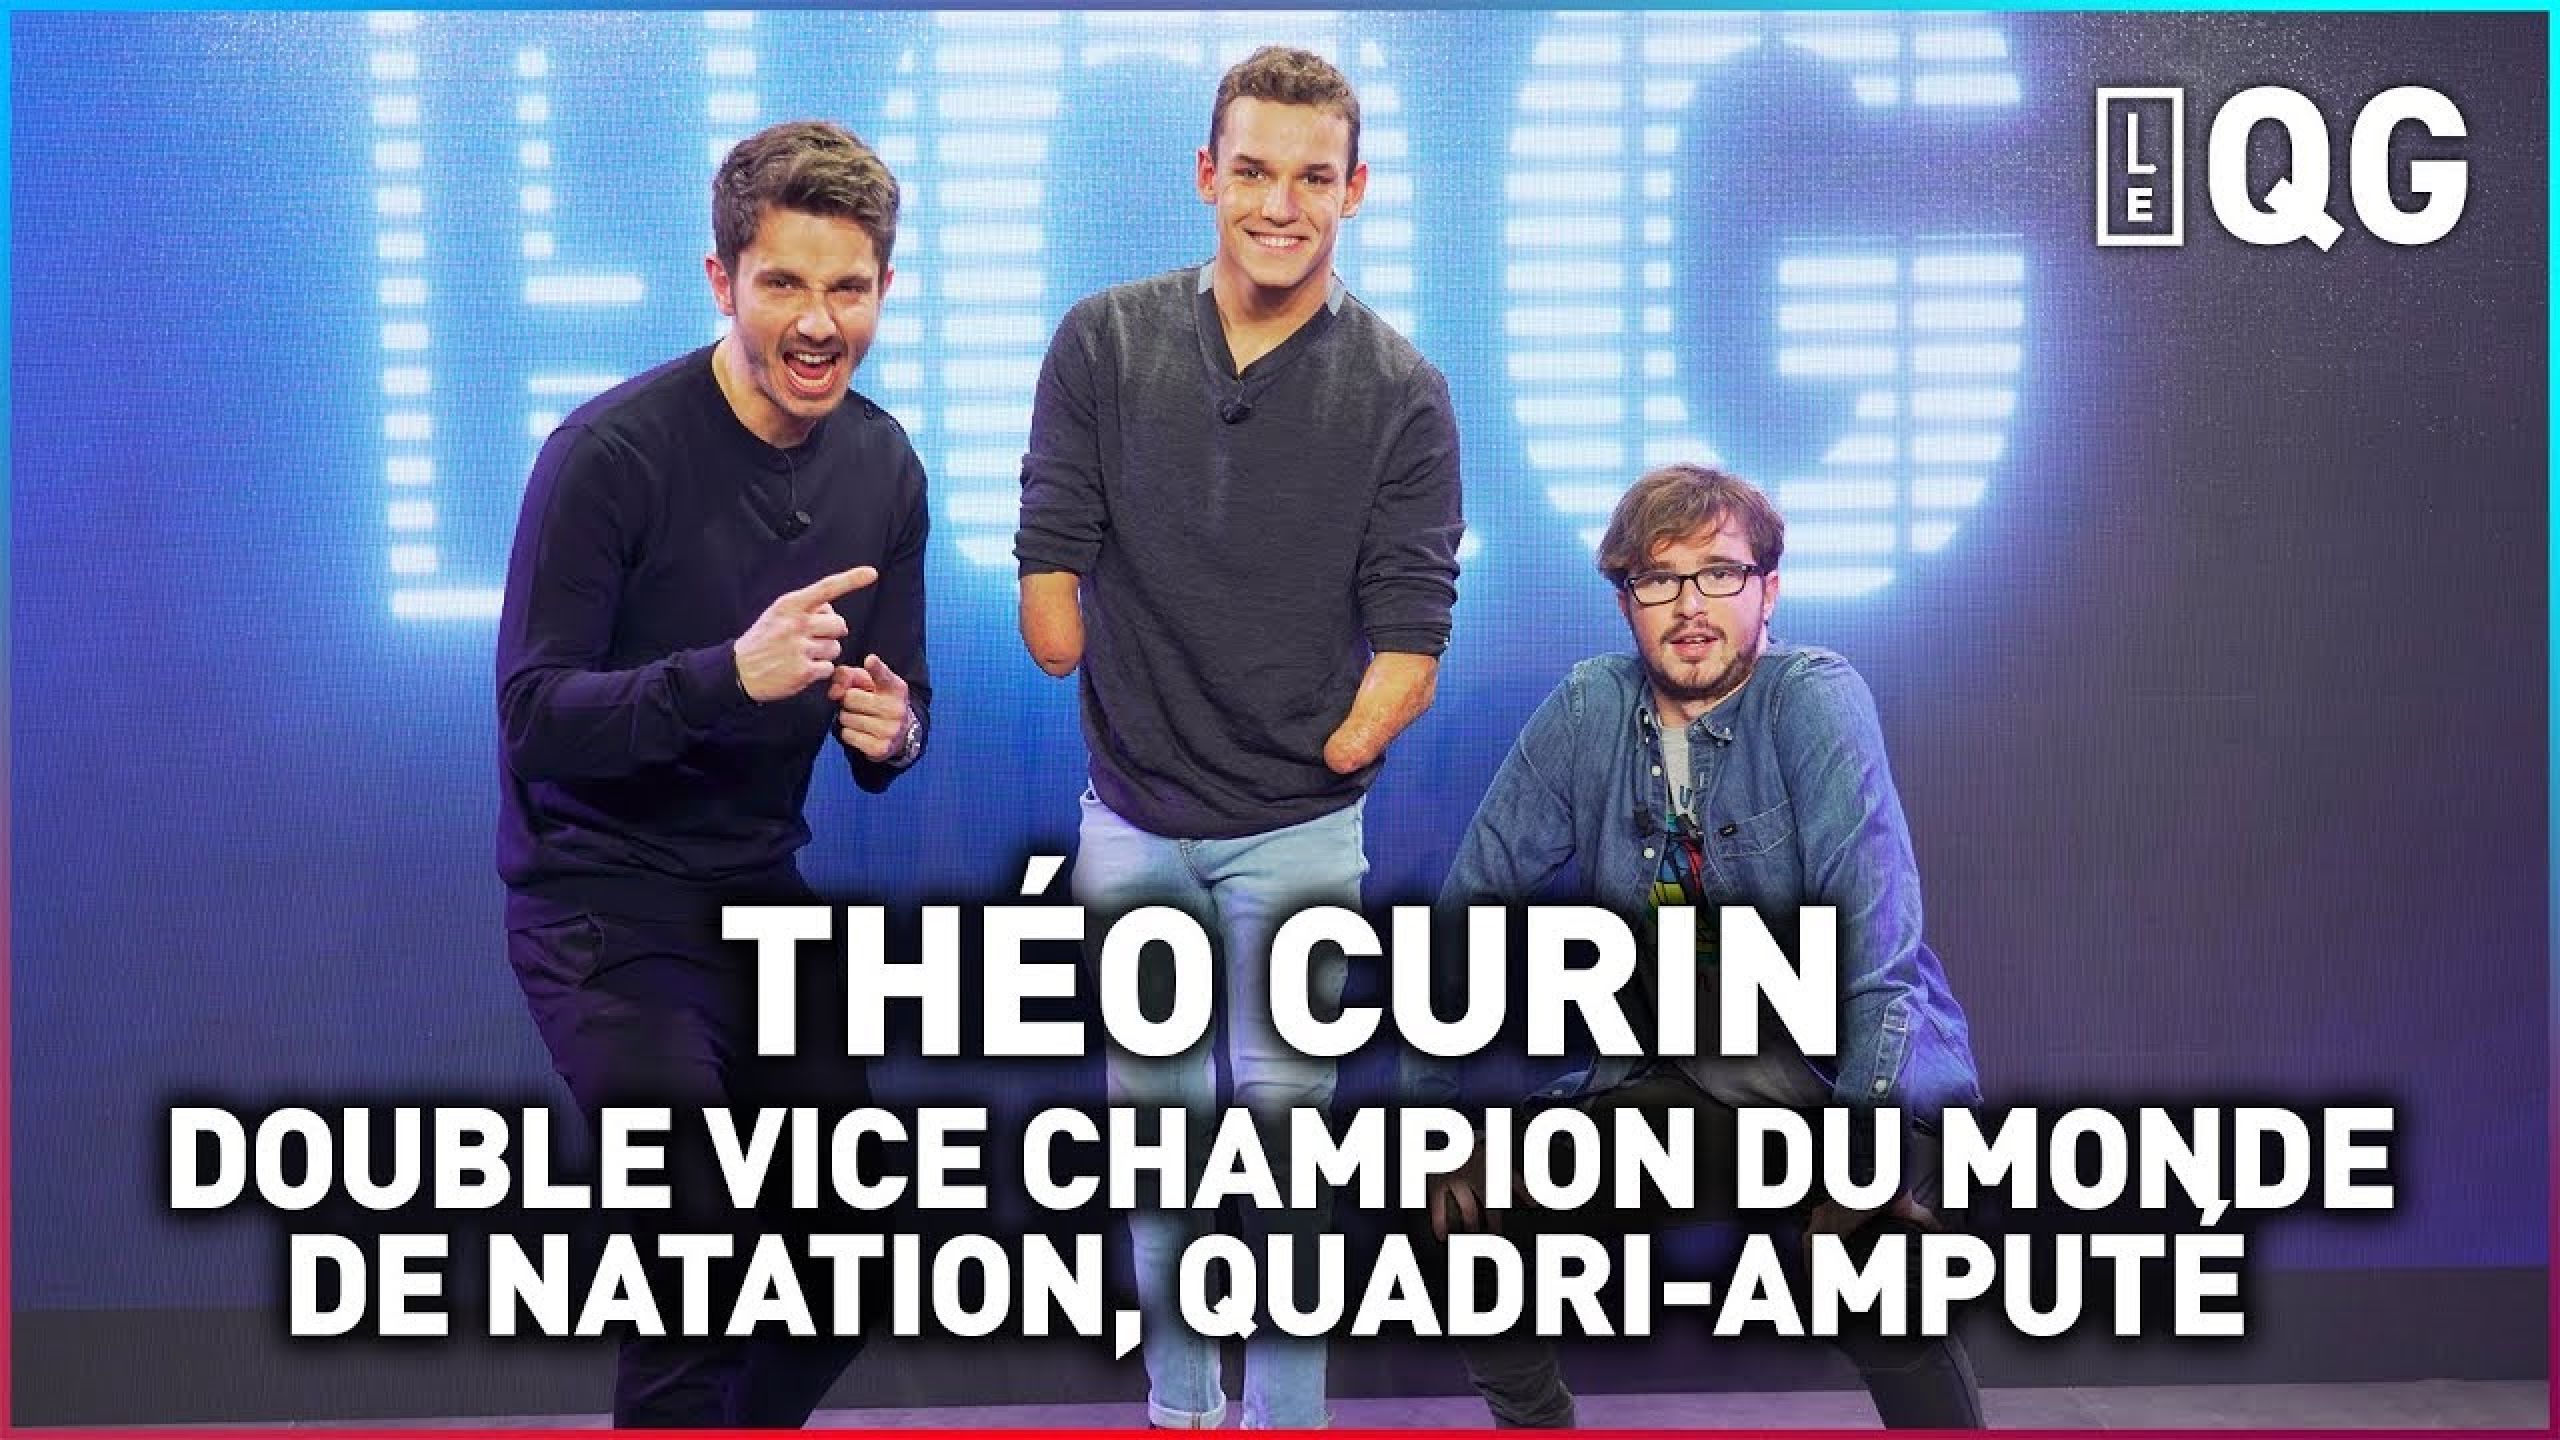 Le Qg 33 Labeeu And Guillaume Pley Avec ThÉo Curin Vice Champion Du